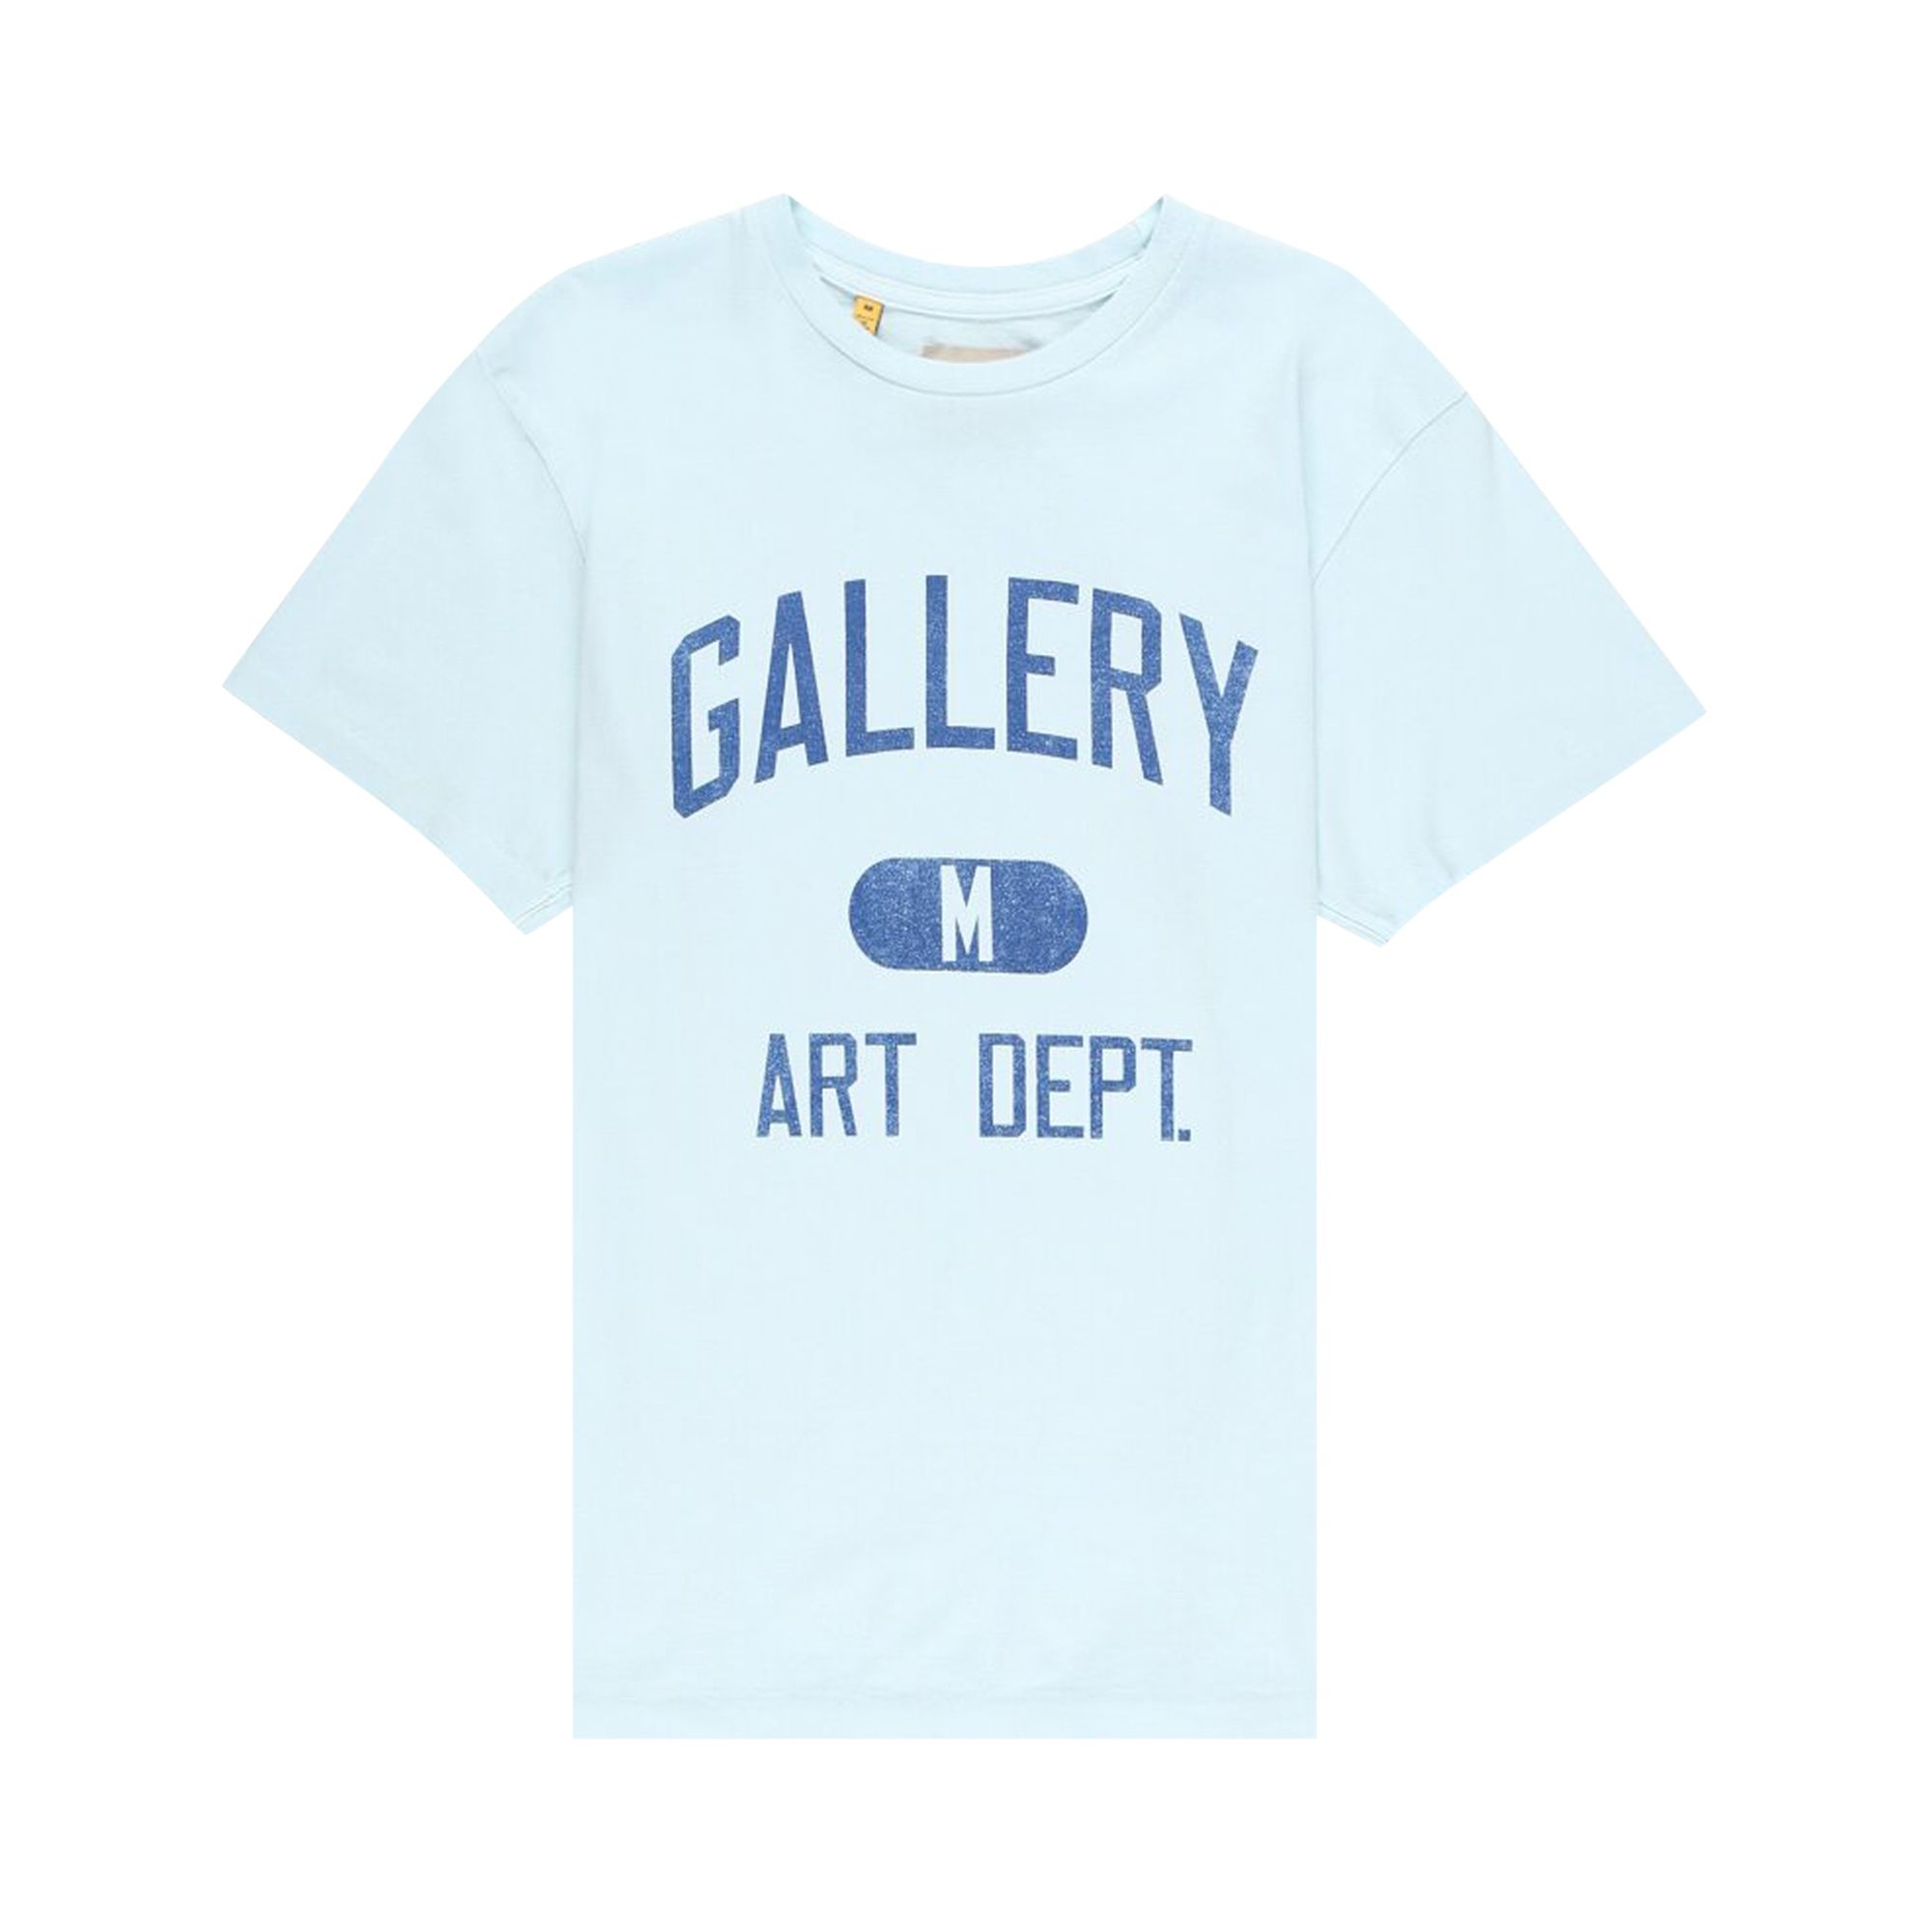 Gallery Dept. Art Dept Tee 'Light Blue/White' - 1